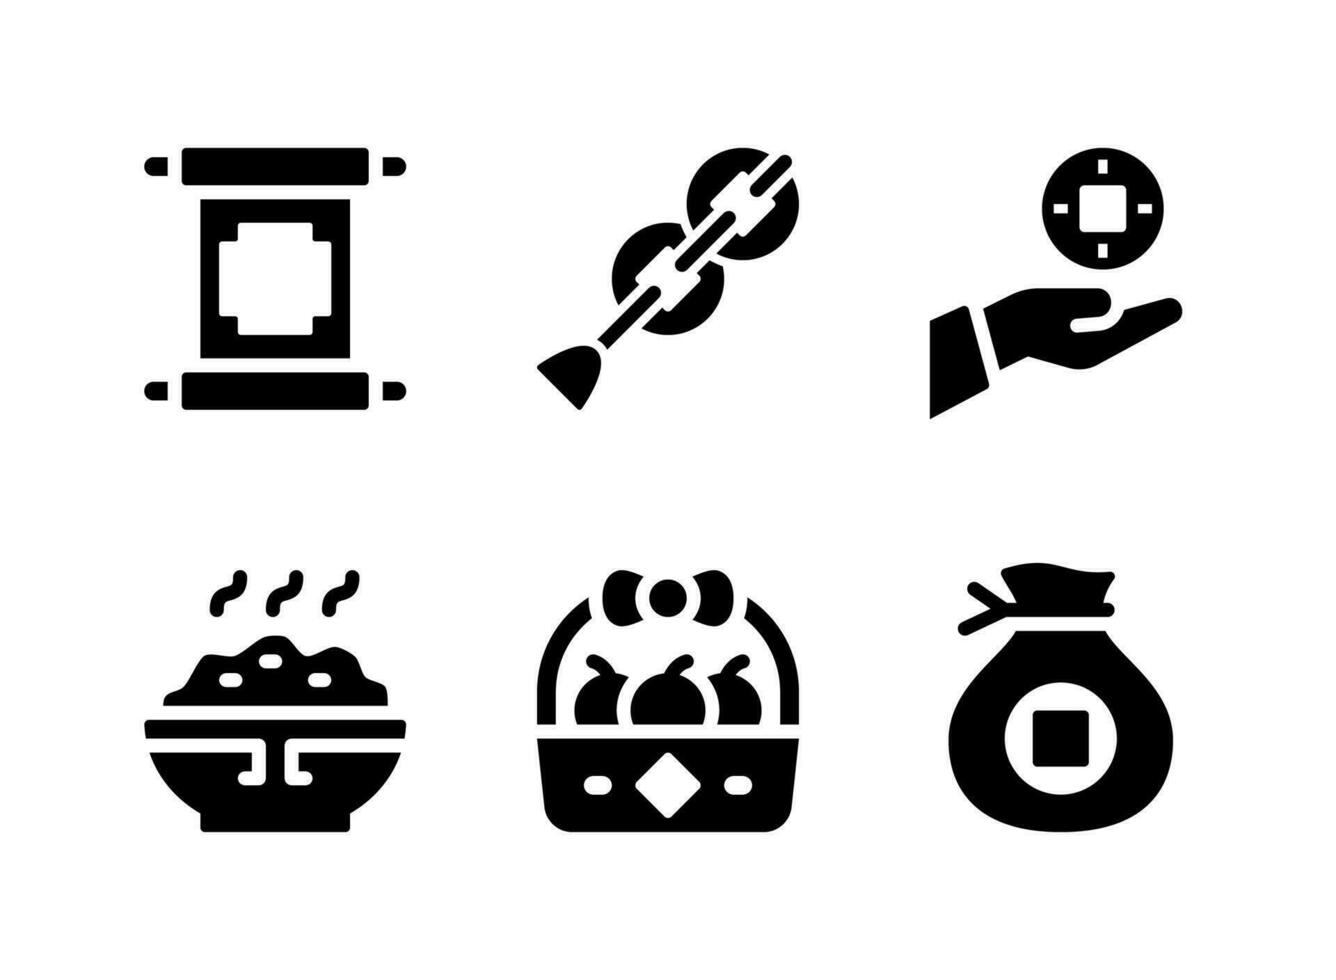 einfacher Satz von chinesischen Neujahrsfesten Vektorsymbolen. enthält Symbole wie chinesische Schriftrolle, Münzen, Reisschüssel und mehr. vektor